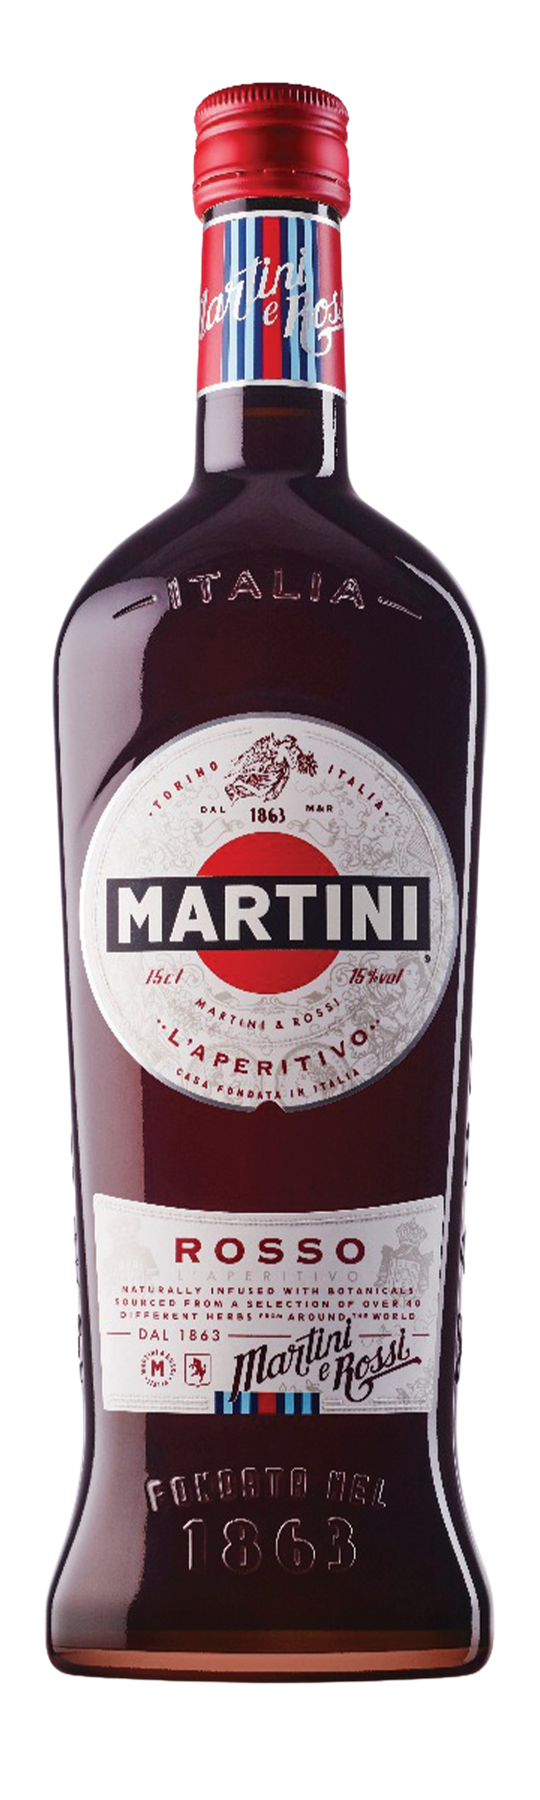 Martini Rosso 15% 150cl